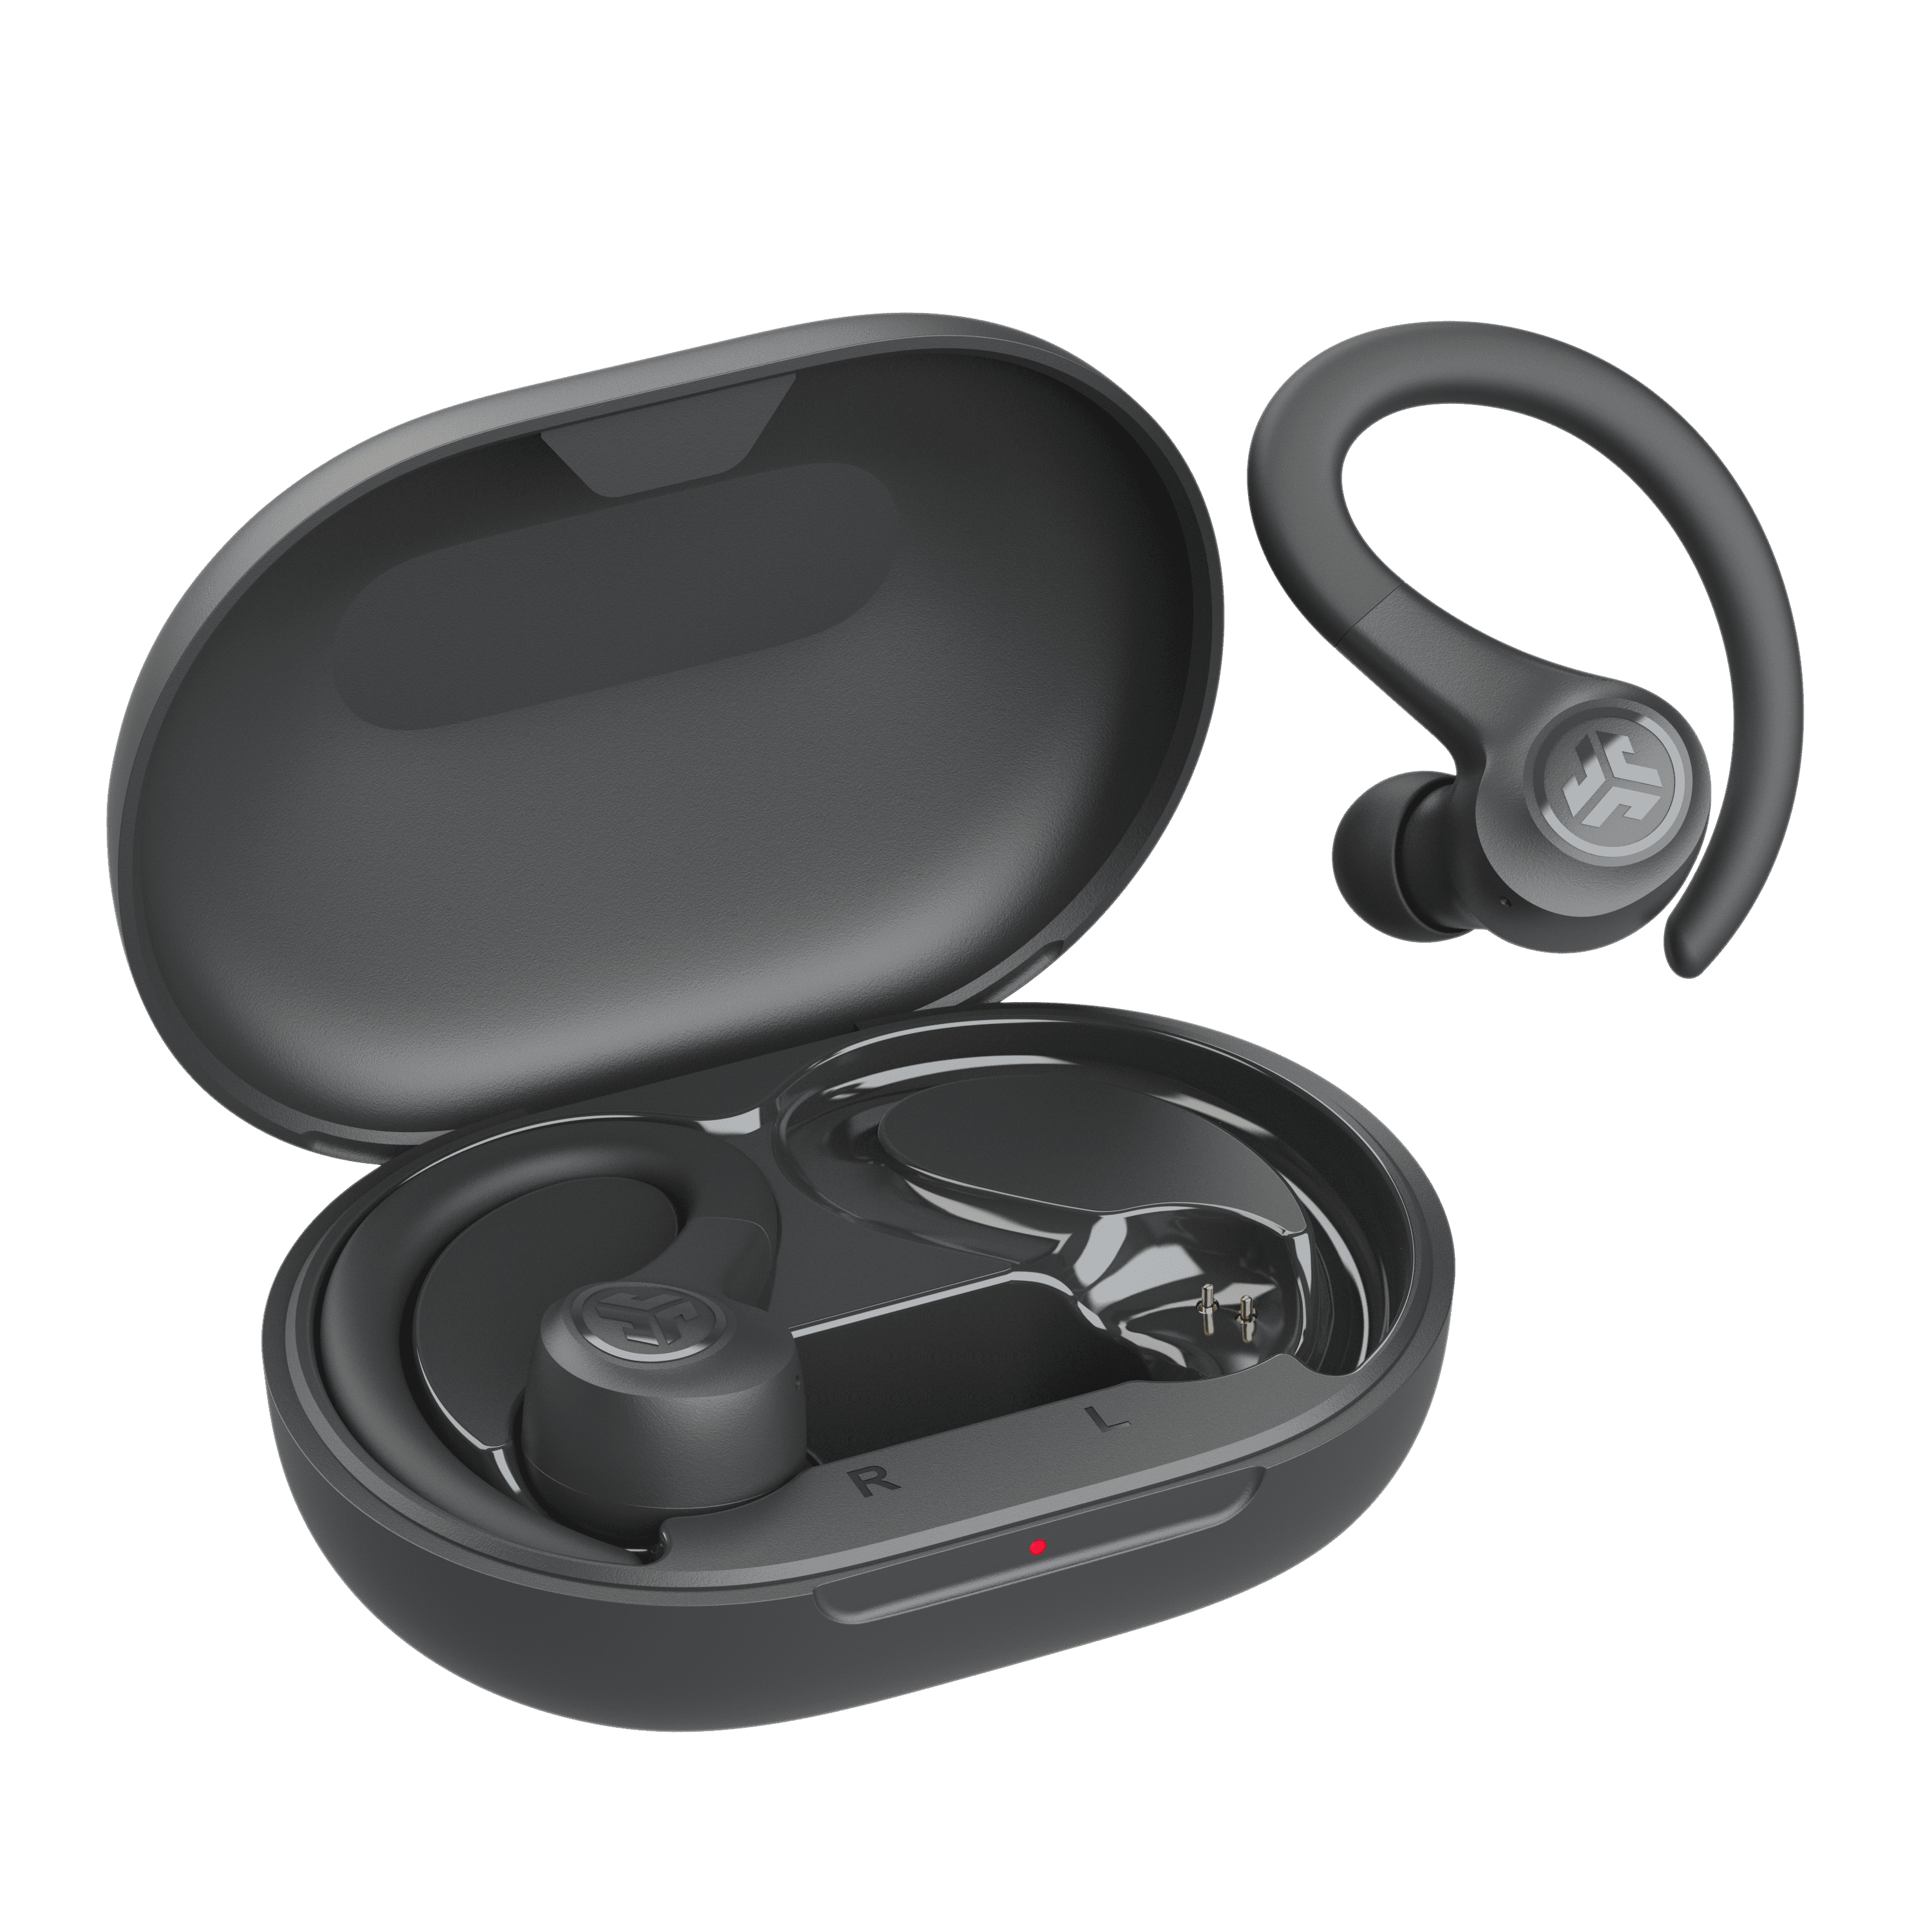 Tai nghe không dây True Wireless JLab GO Air Sport màu đen - Kết nối Bluetooth - Chống mồ hôi IP55 - Hàng chính hãng - Bảo hành 2 năm